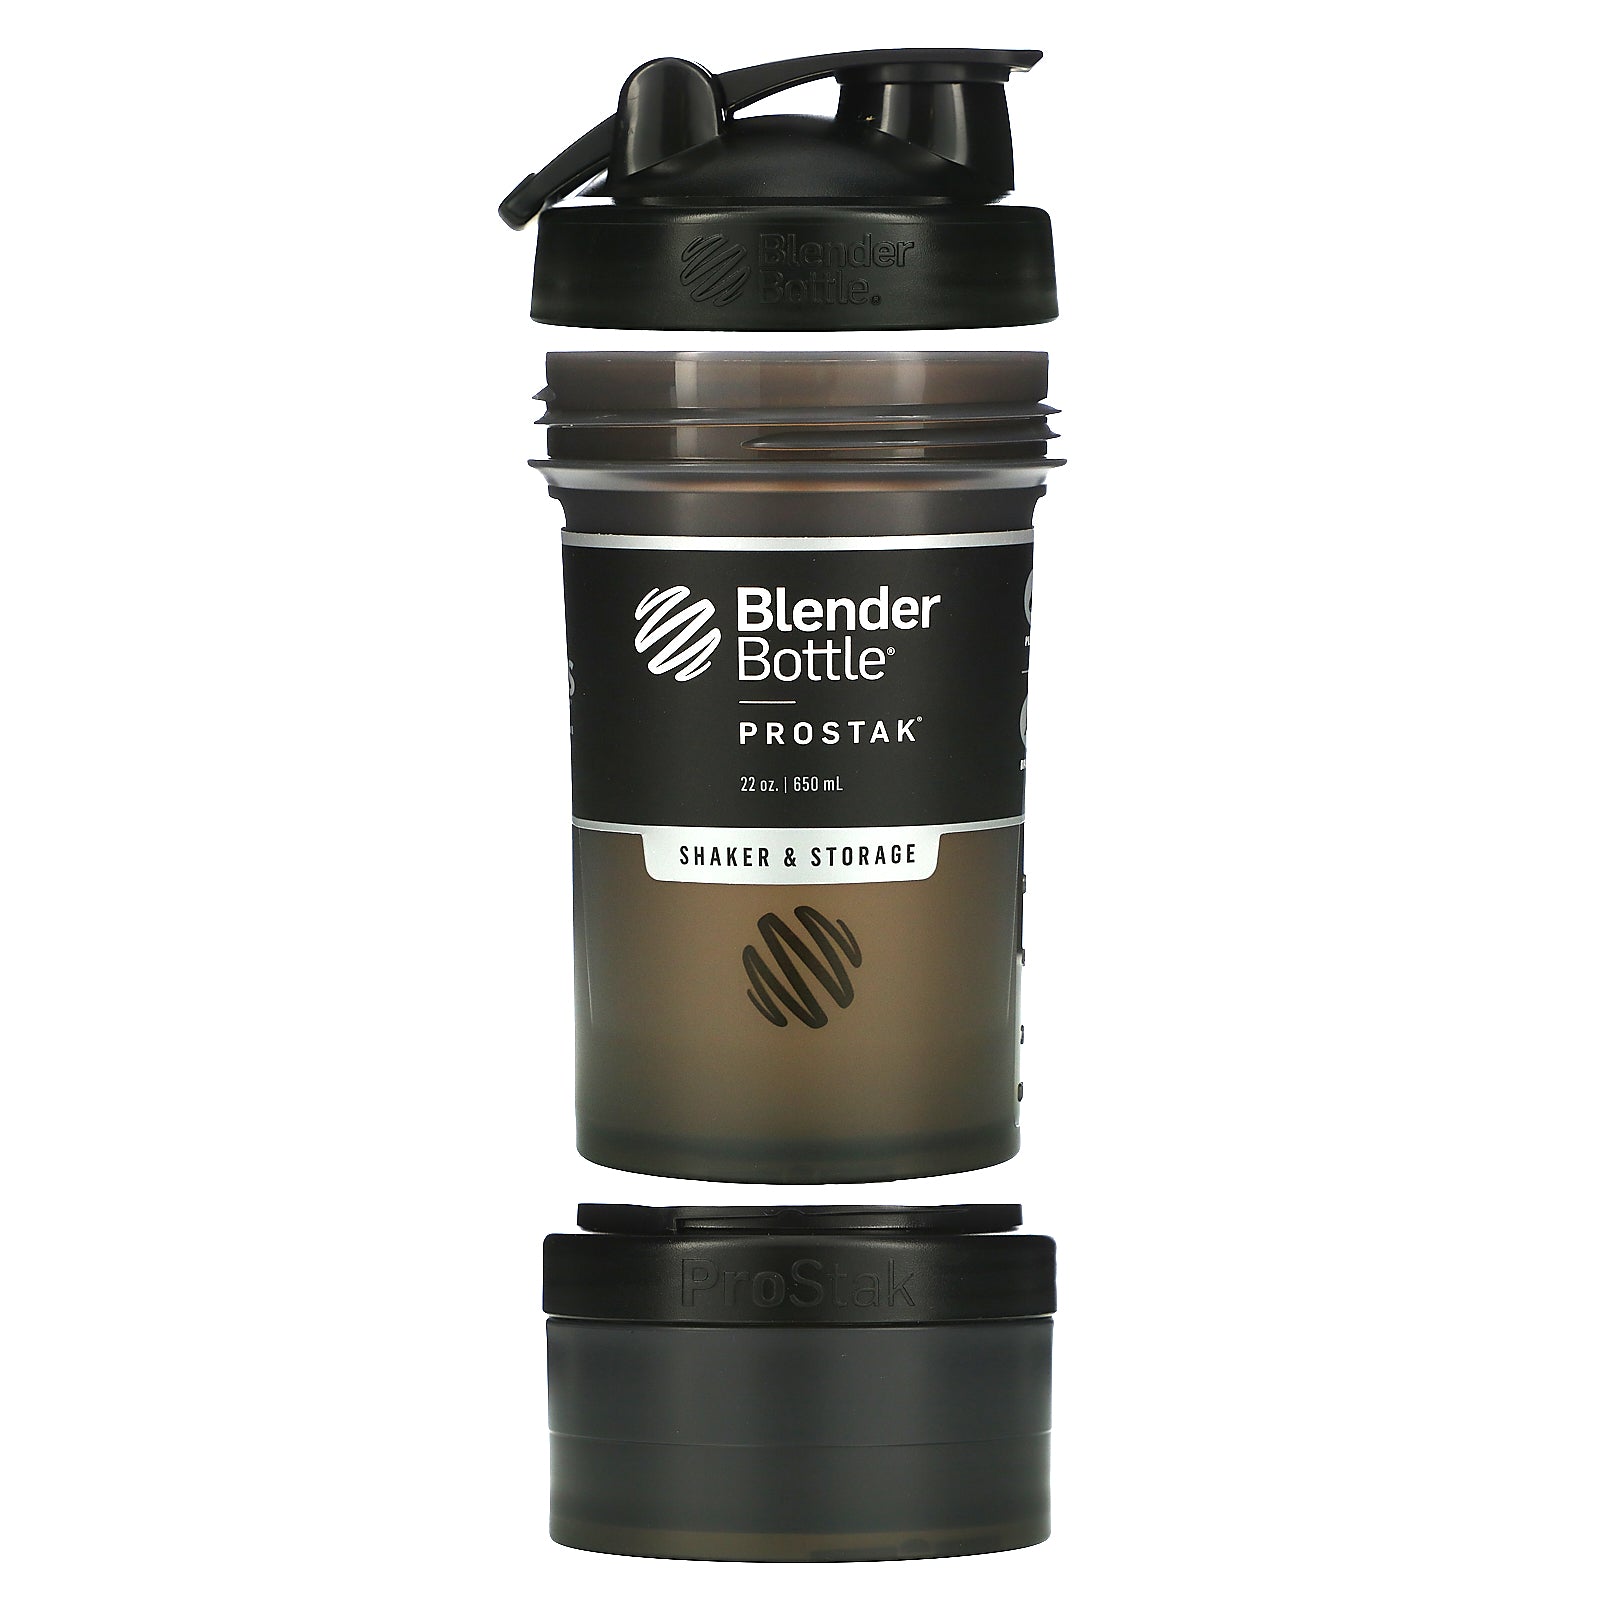 Blender Bottle, ProStak (650 ml)